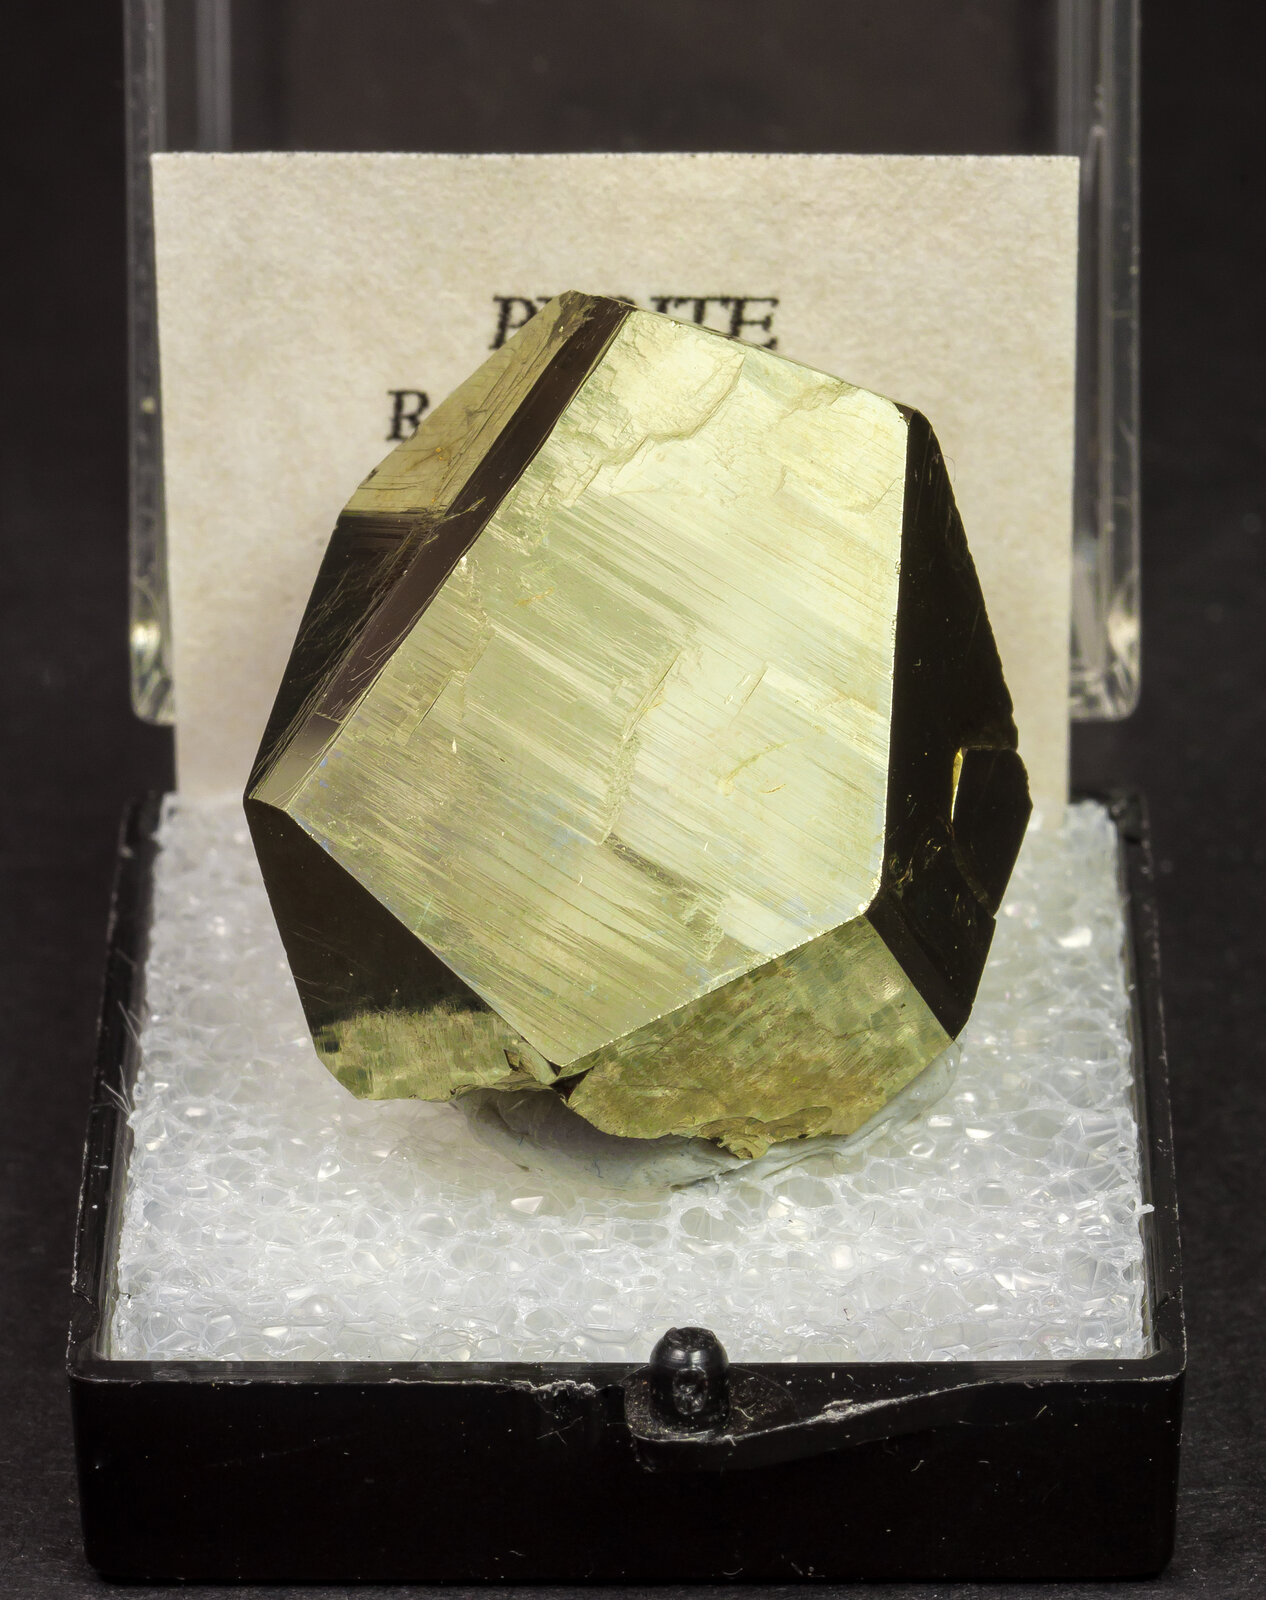 specimens/s_imagesAM8/Pyrite-MG14AM8f.jpg